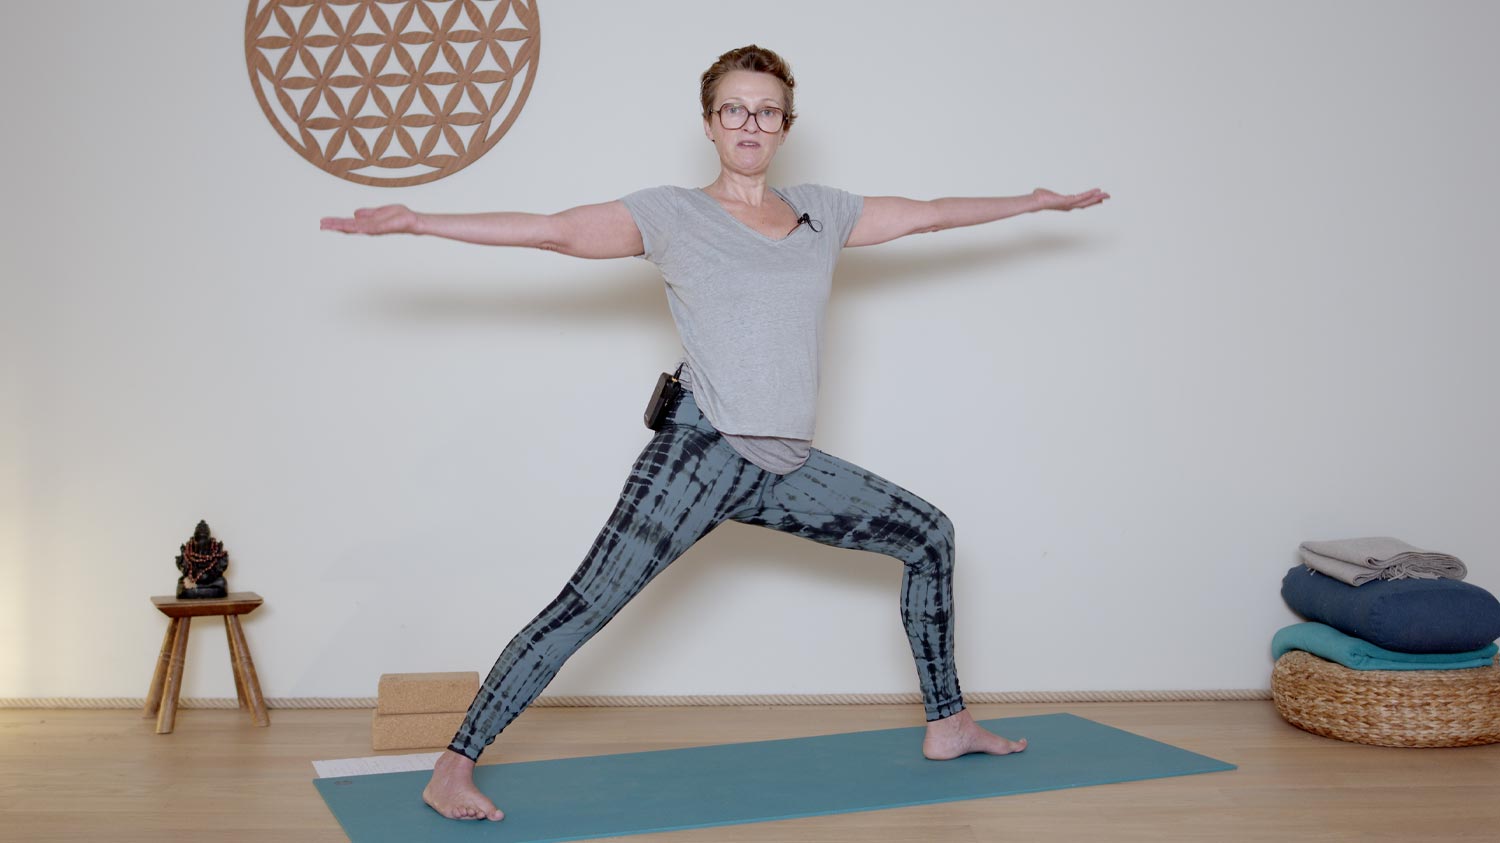 Les 5 guerrier.e.s du Yoga | Cours de yoga en ligne avec Delphine Denis | Hatha Yoga dynamique